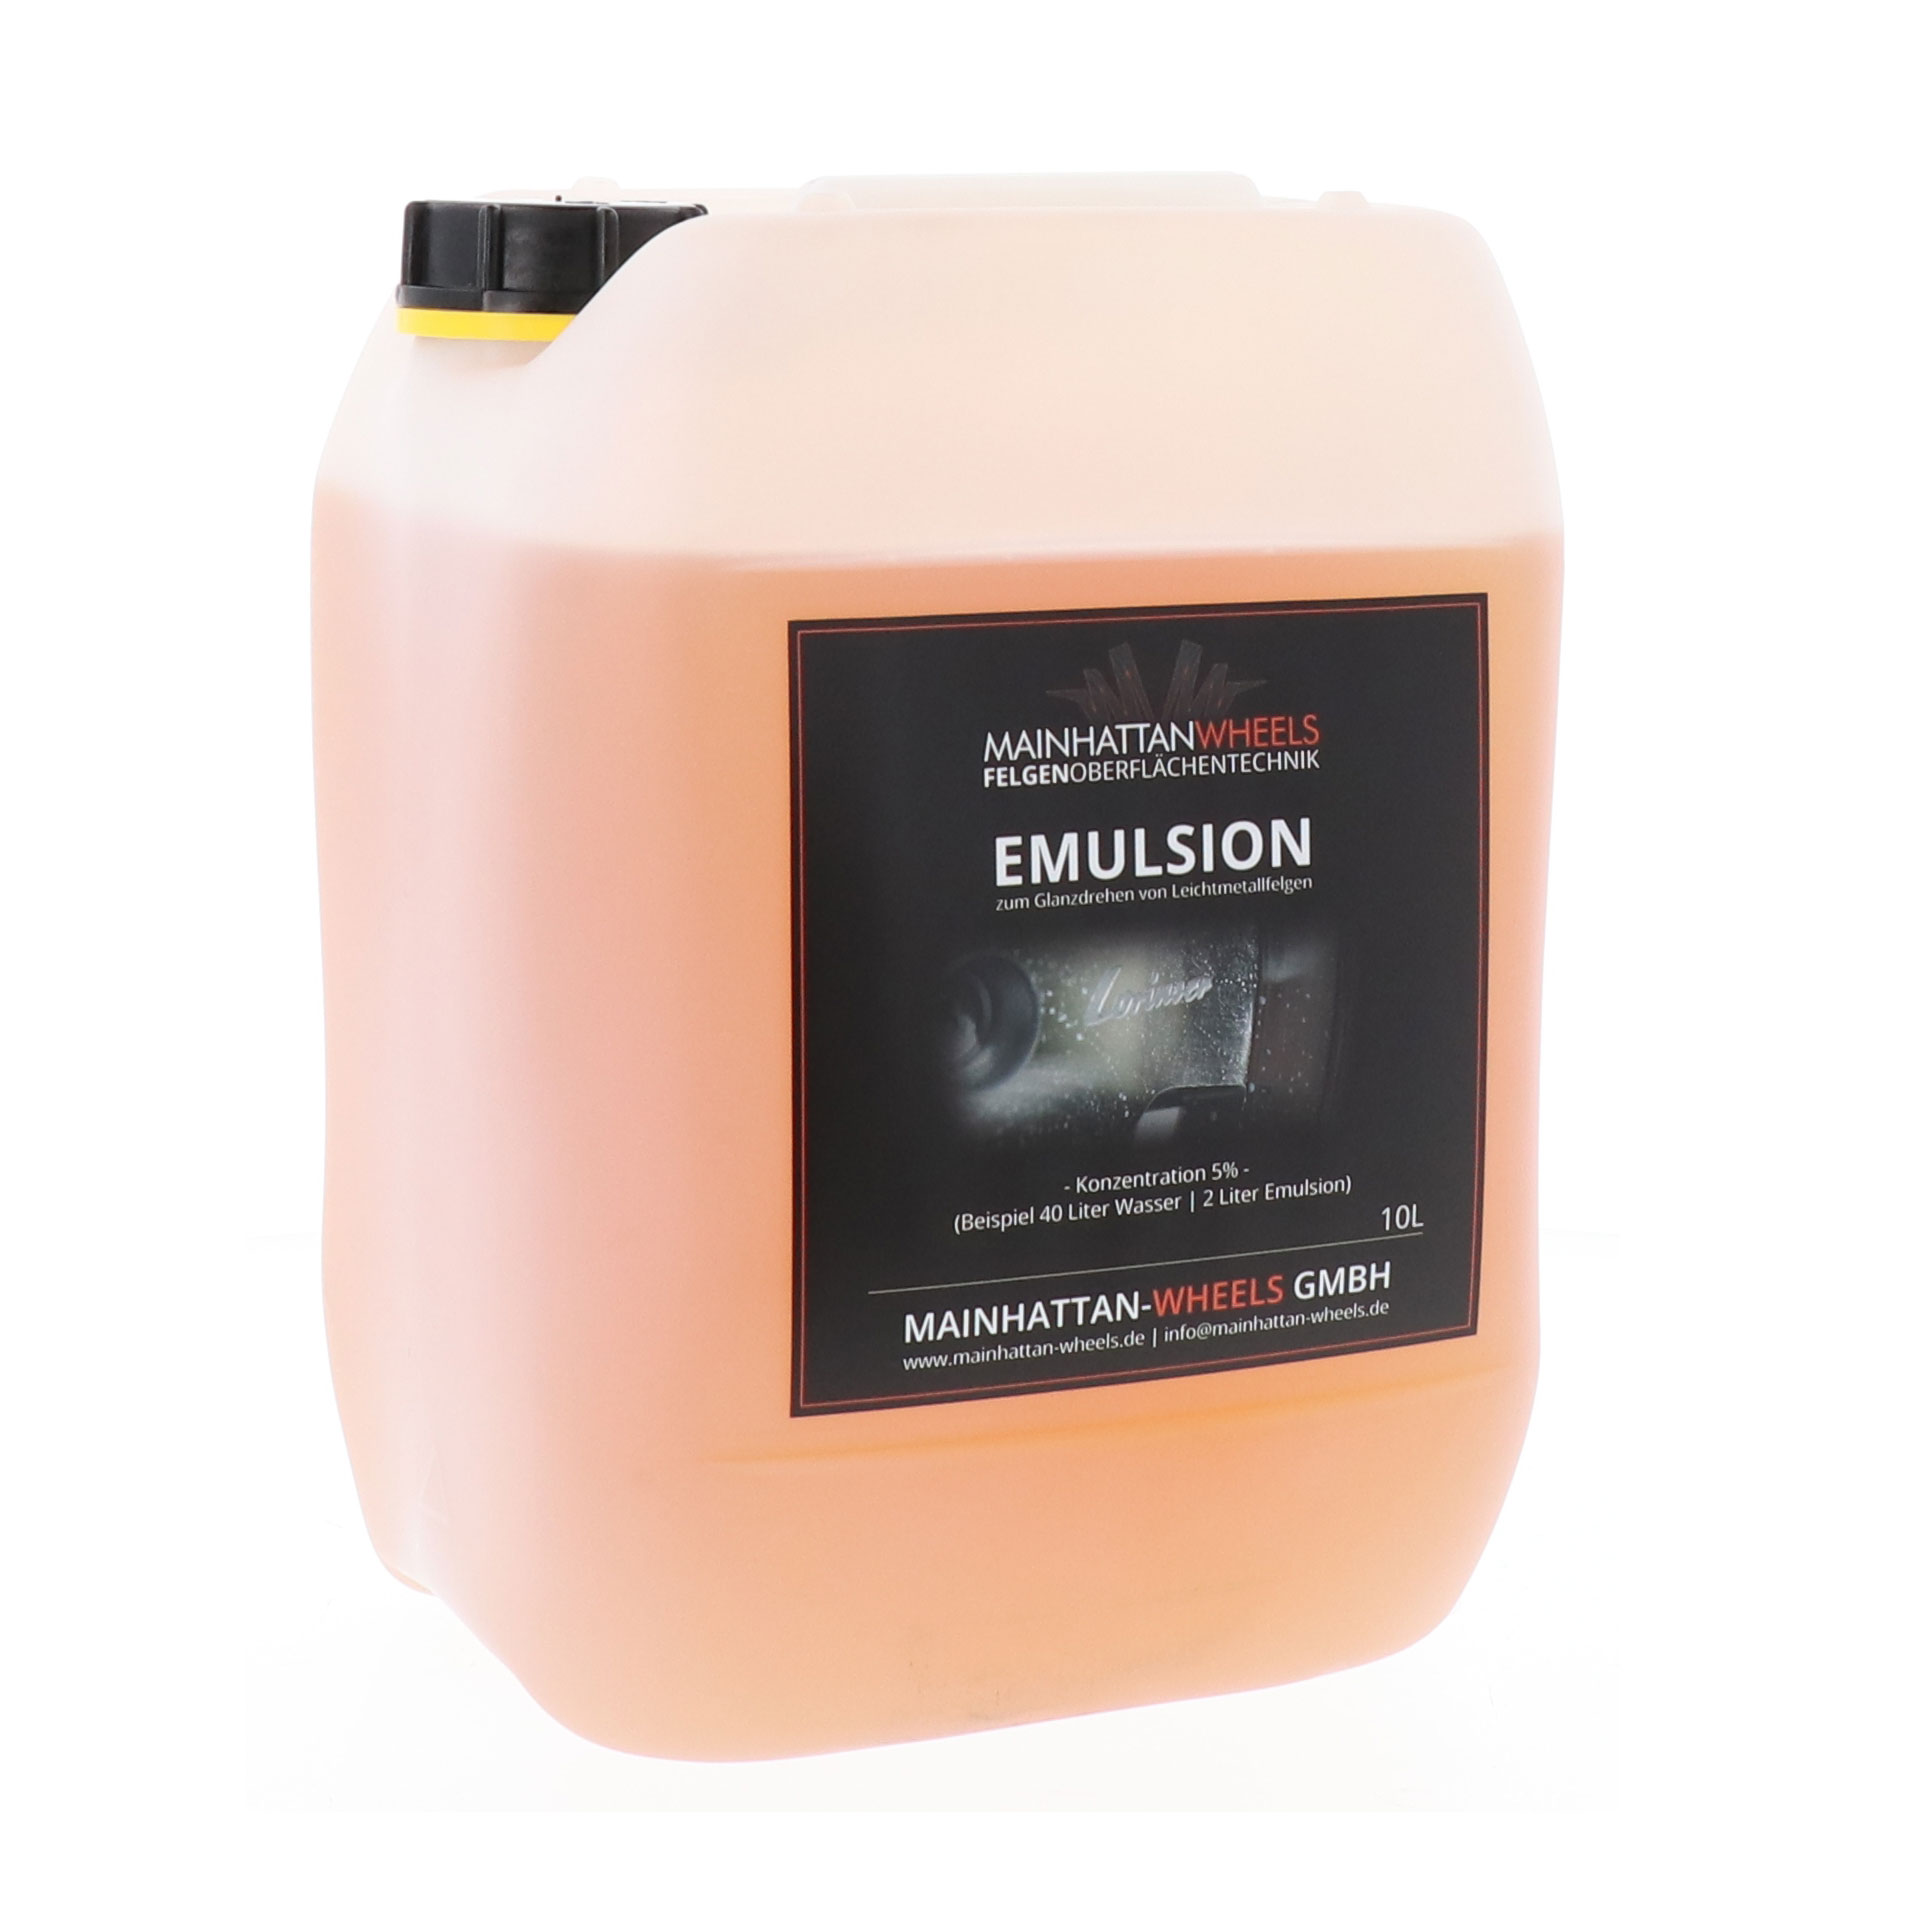 Emulsion zum Glanzdrehen von Leichtmetallfelgen - 10 Liter